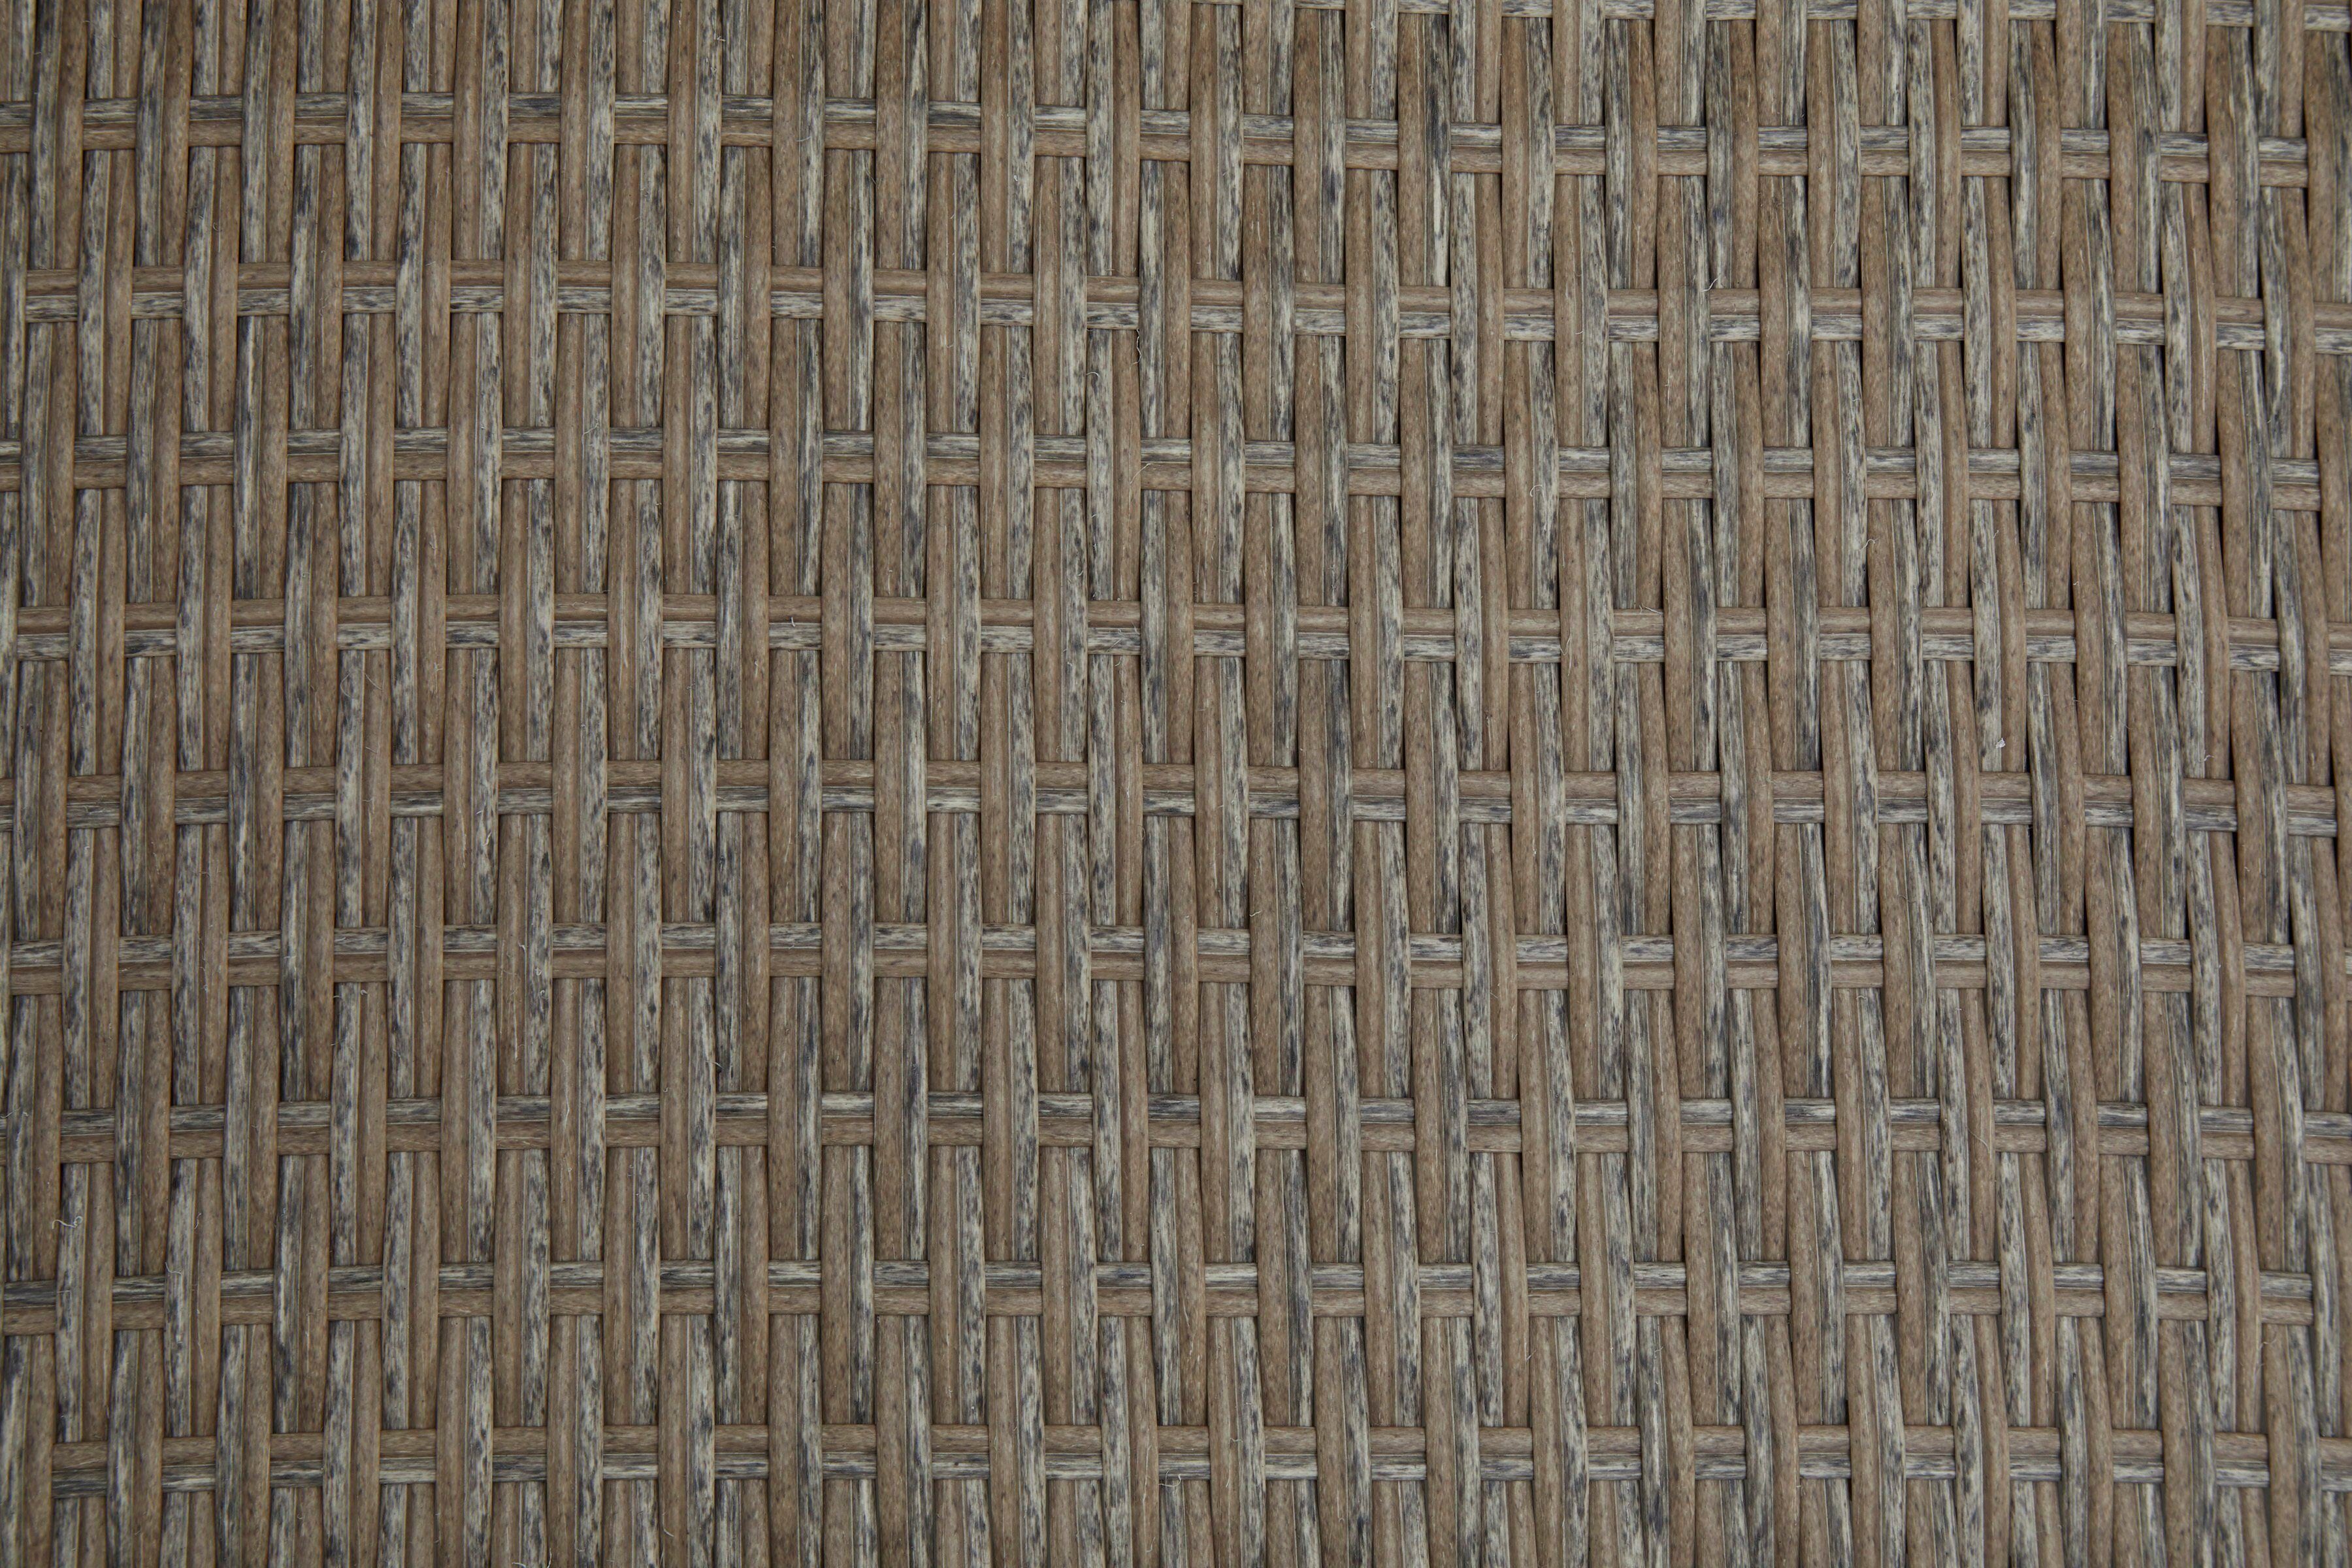 KONIFERA Loungesofa Alabama, inkl. Polyrattan, BxTxH: cm, 200x133x60 Auflage